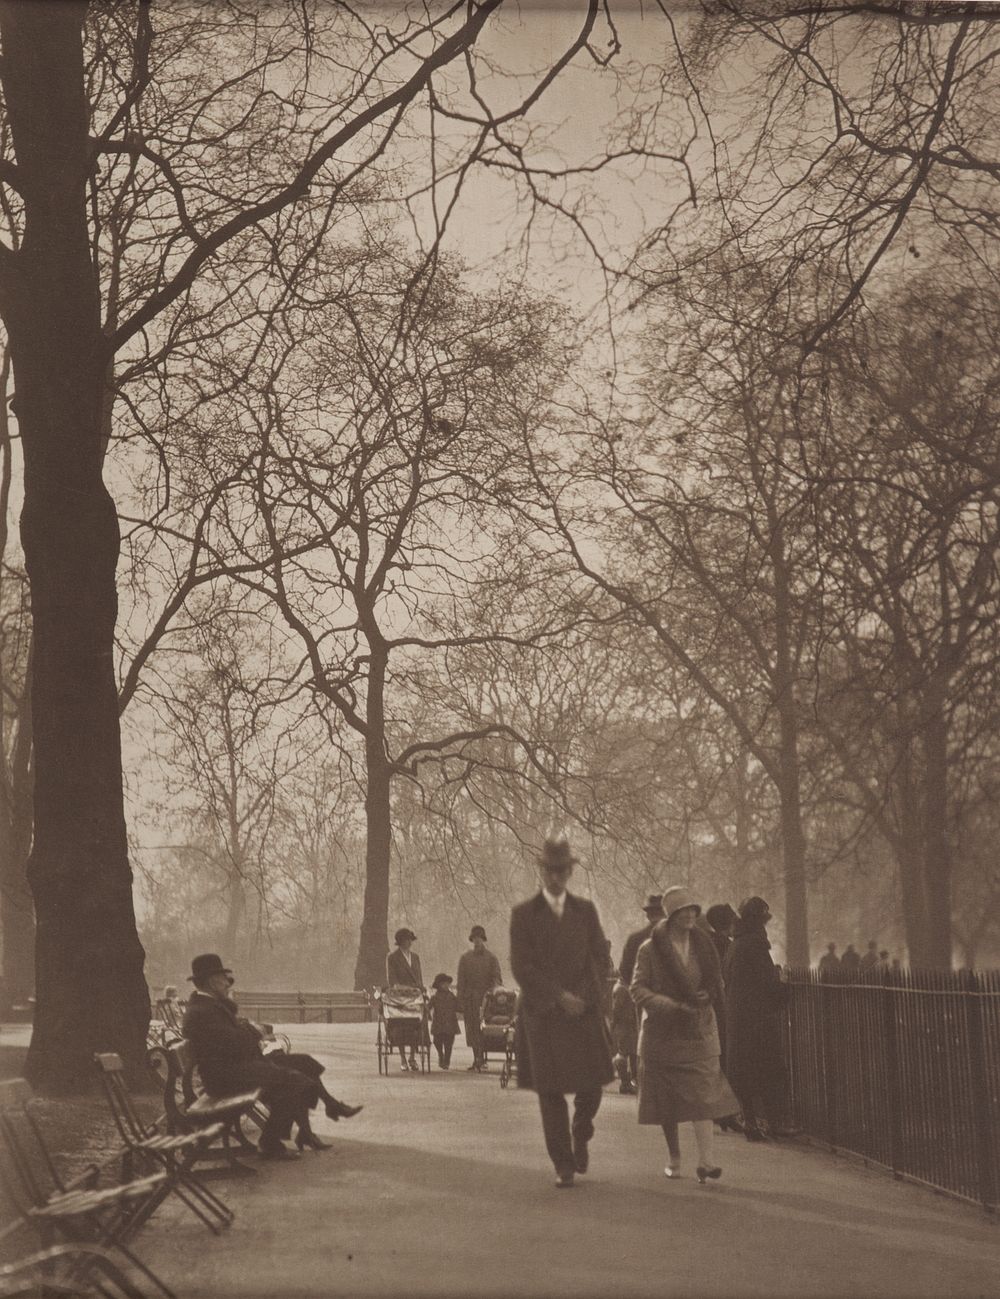 St James's Park (1920s) by Harry Moult.